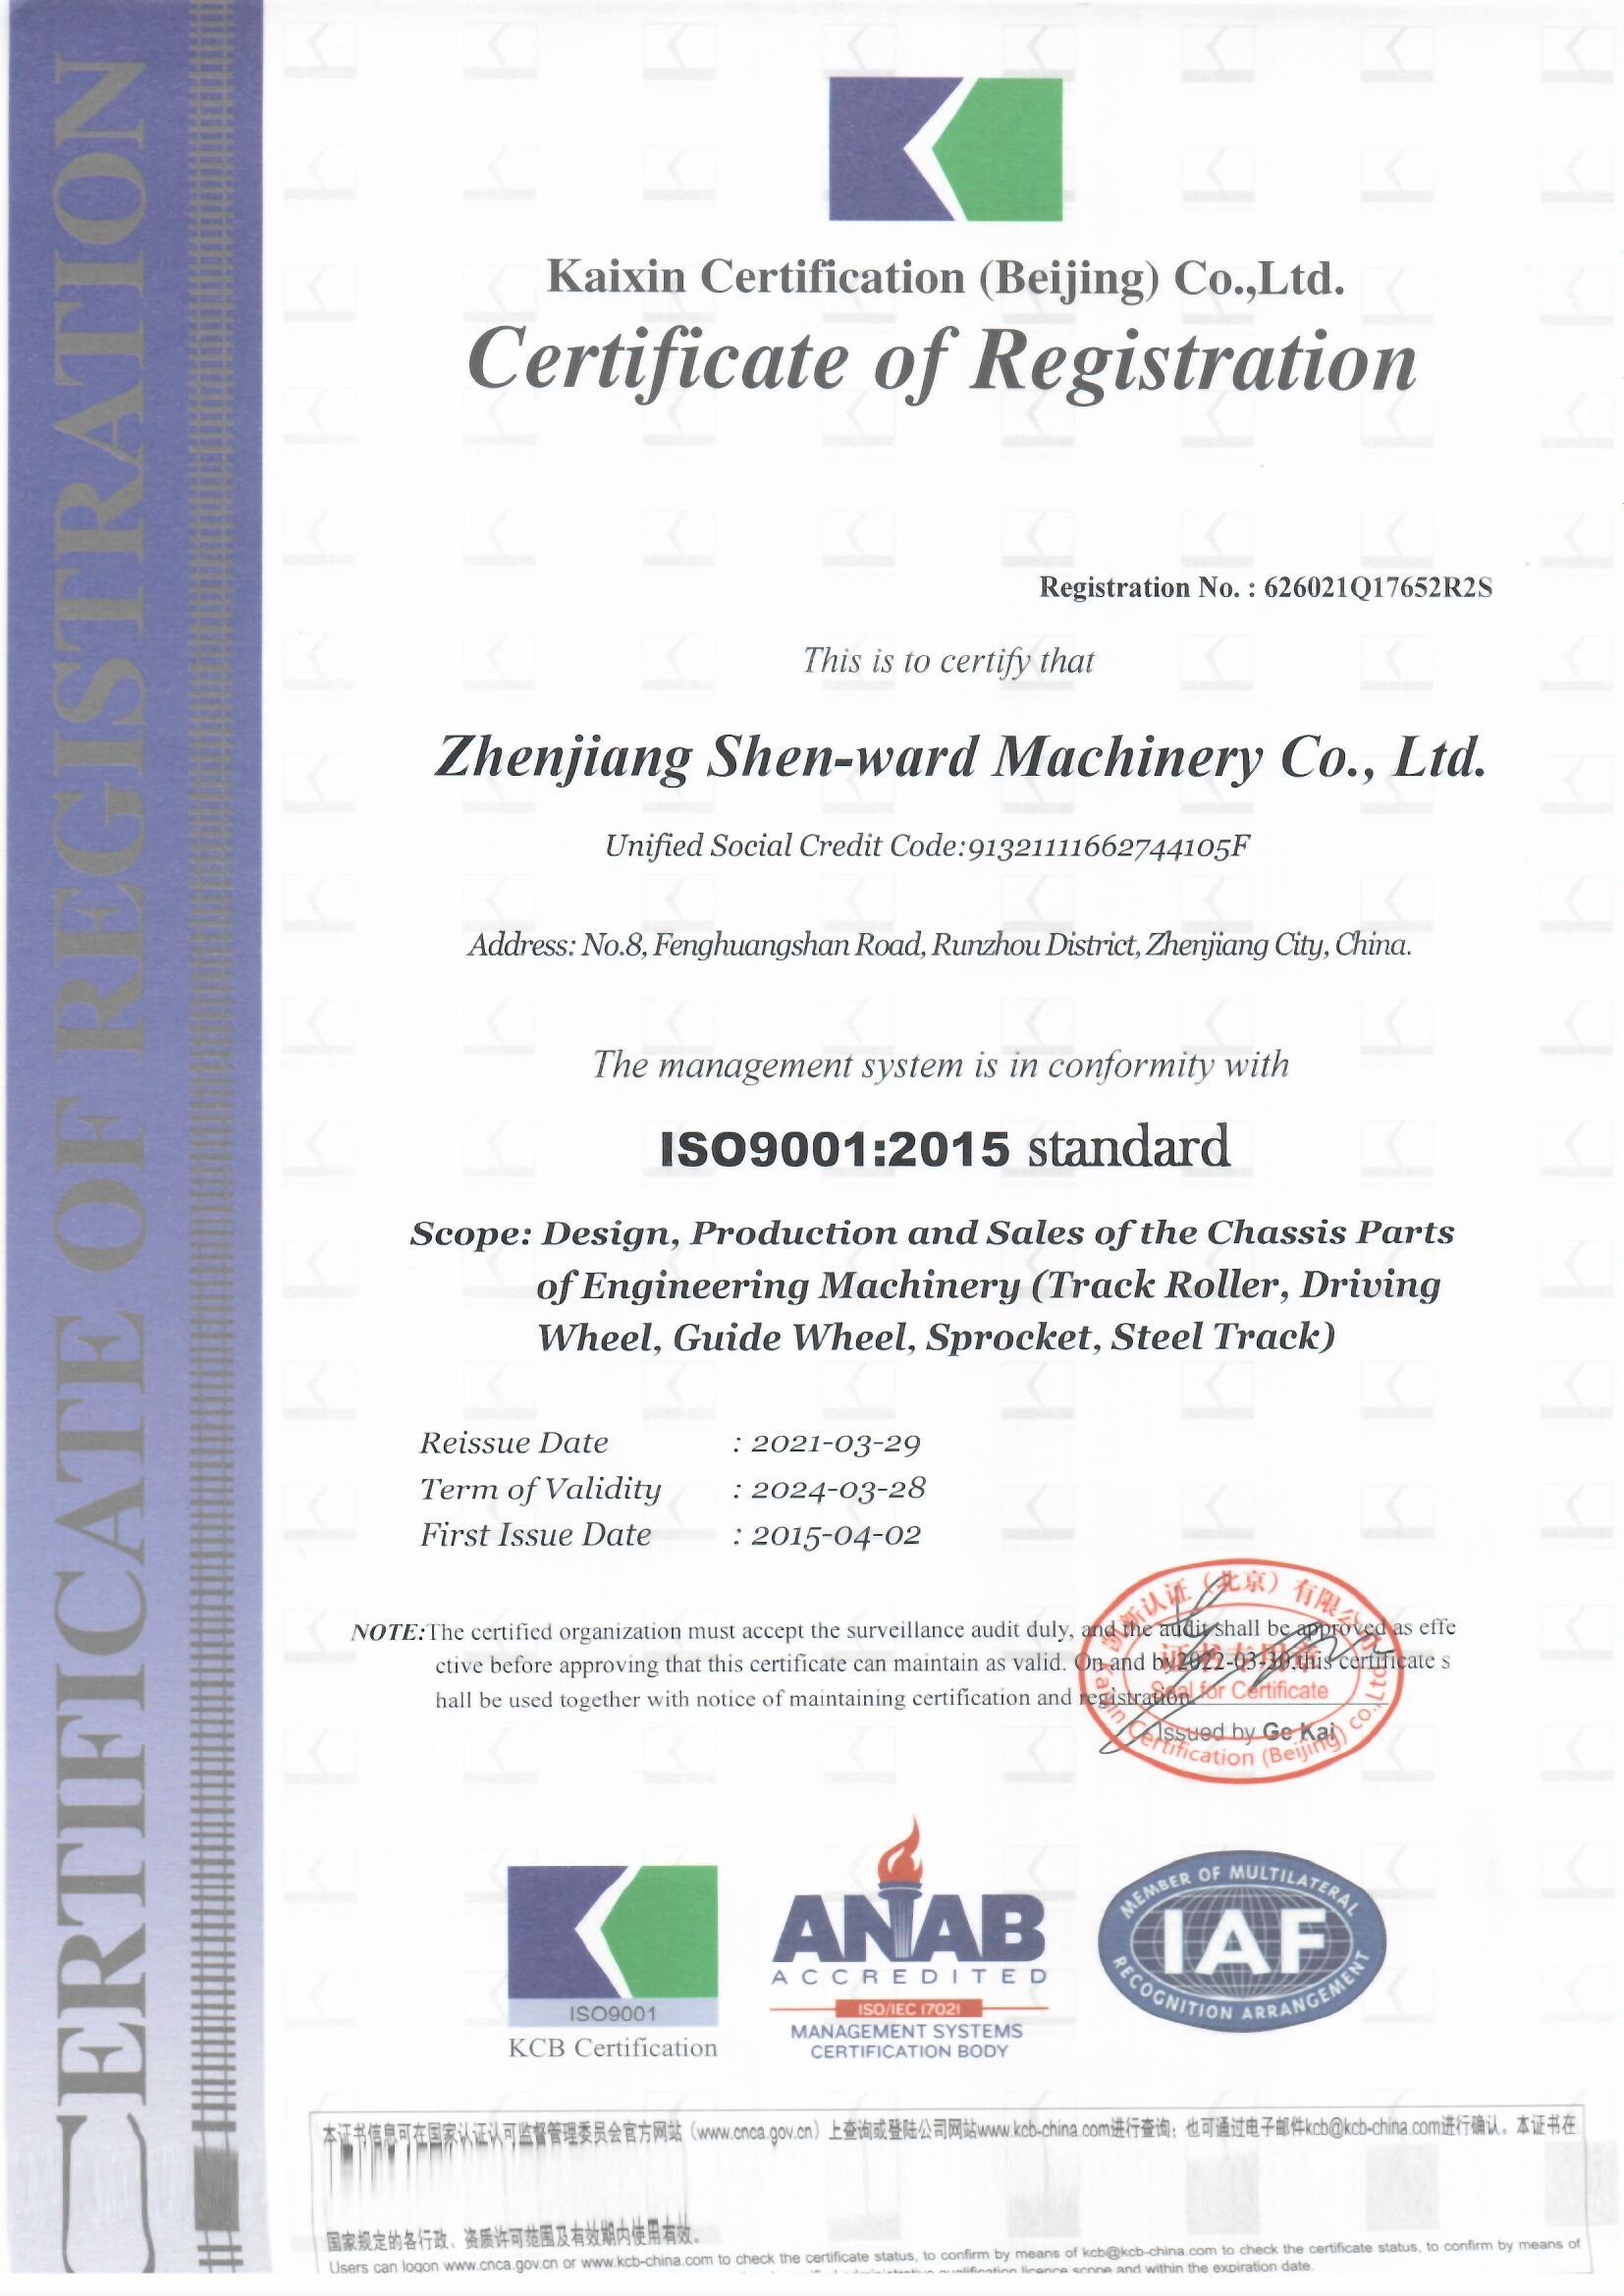 ISO9001:2015-kvalita administra sistemo ludas ŝlosilan rolon en fabrika produktado